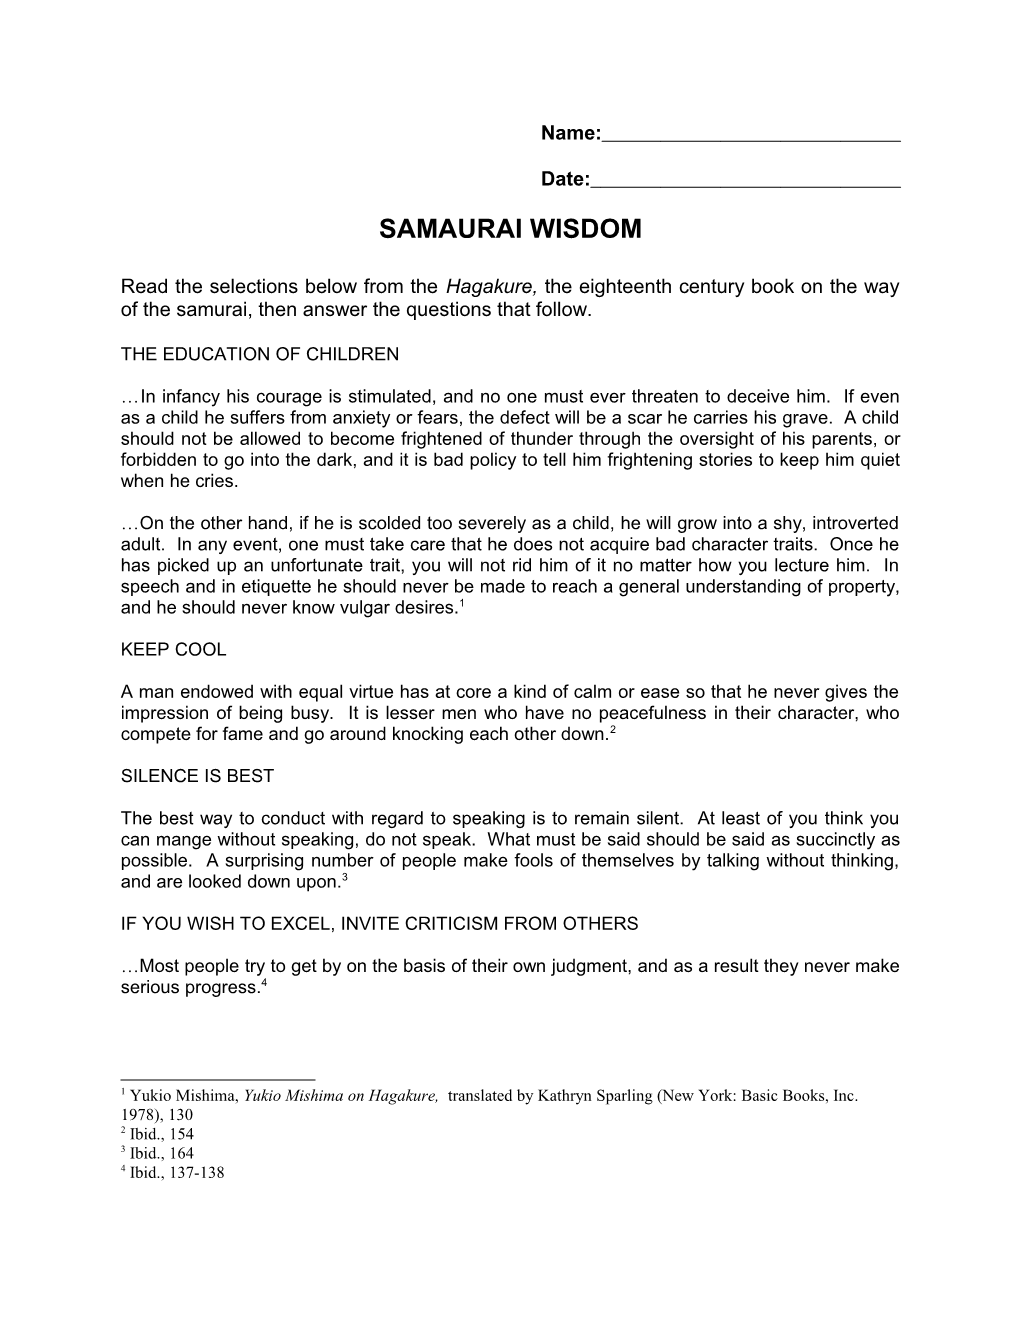 Samaurai Wisdom